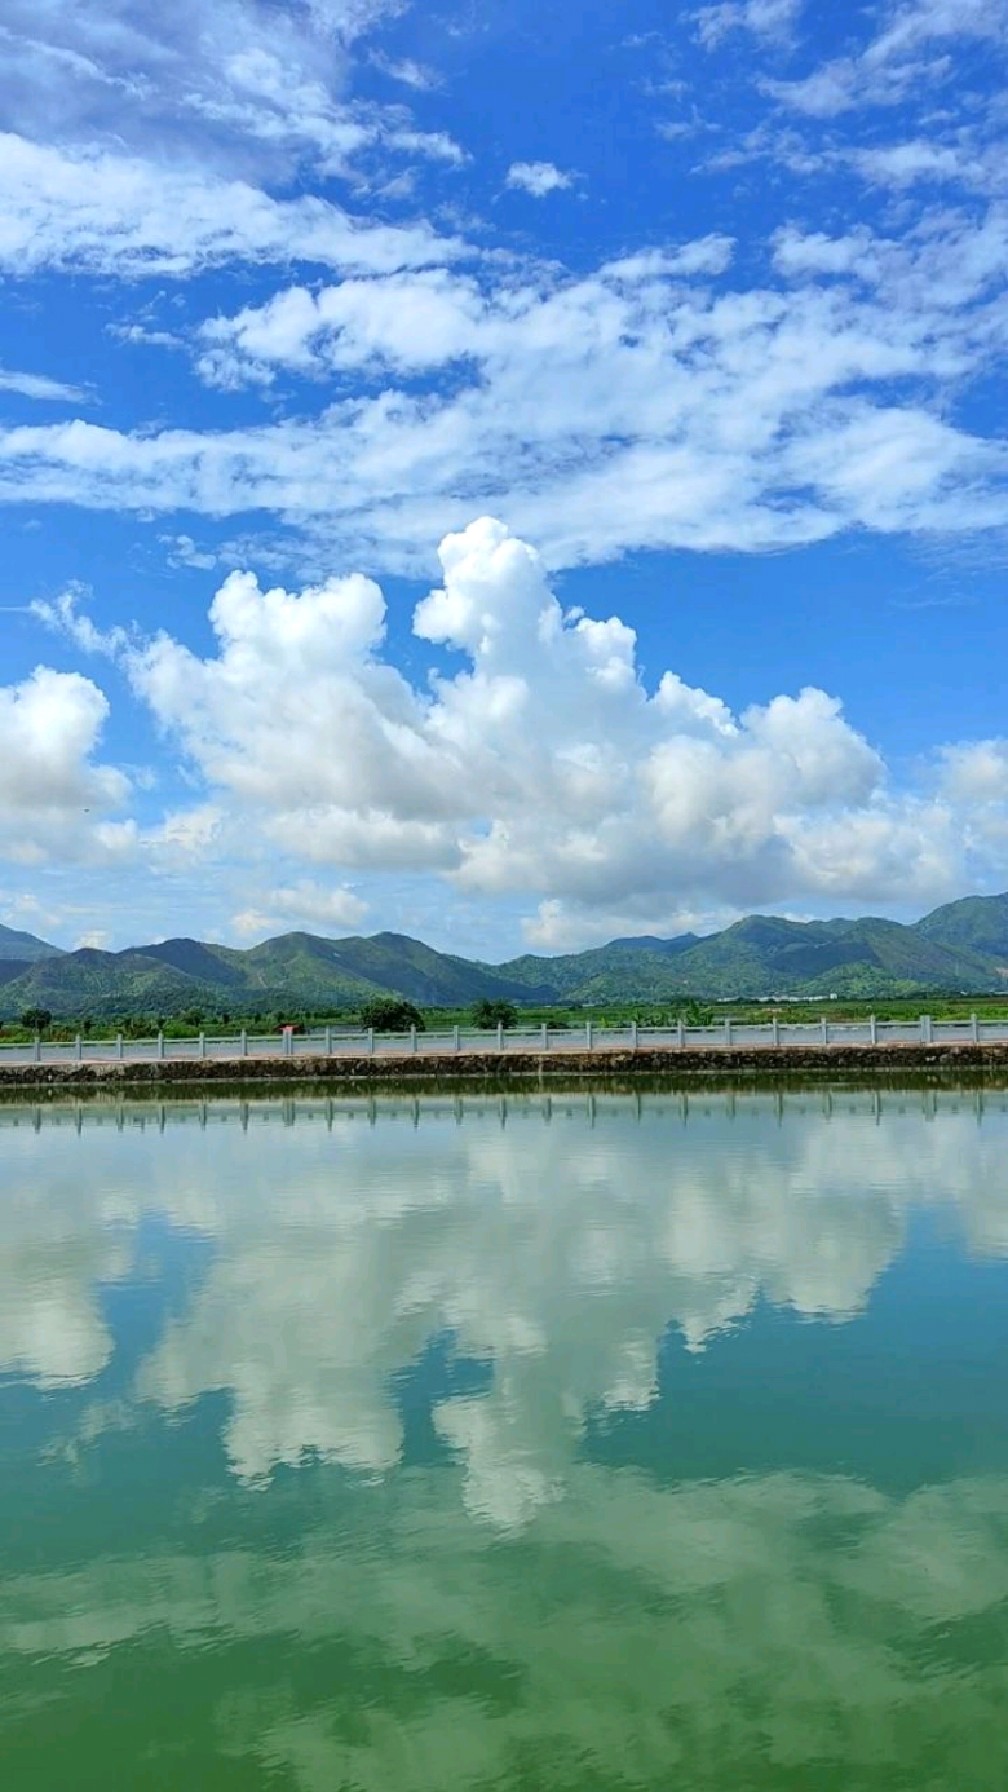 海丰赤坑美丽生态乡村景色,广东汕尾.